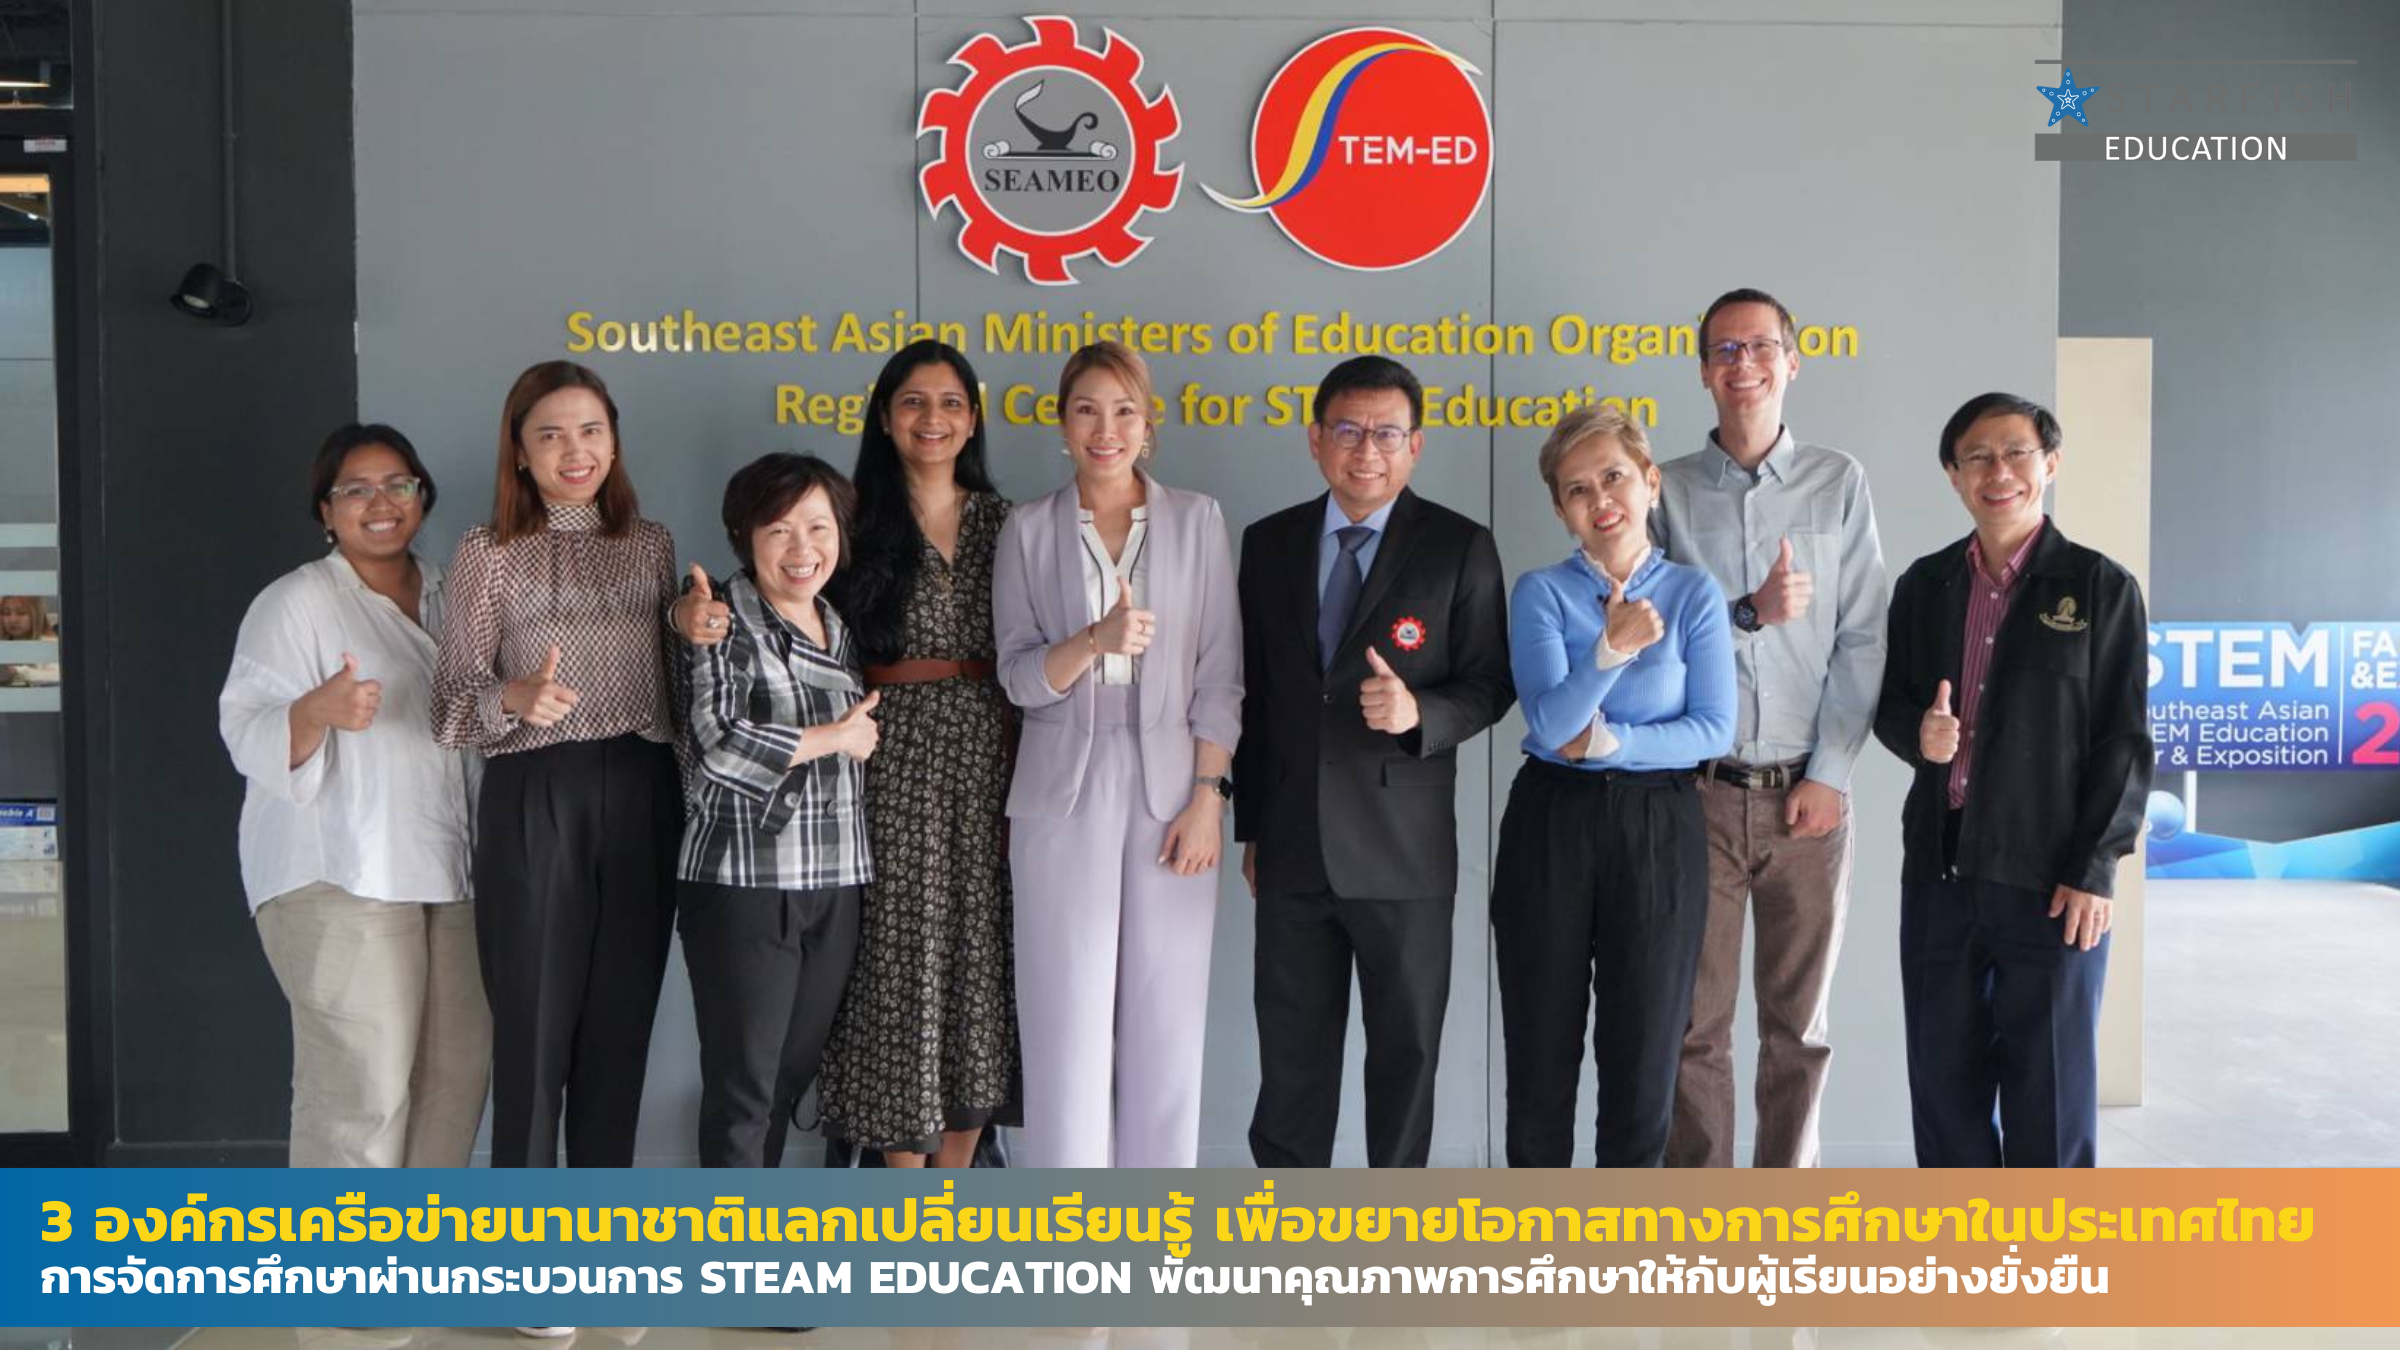 3 องค์กรเครือข่ายนานาชาติร่วมหารือแลกเปลี่ยนเรียนรู้ เพื่อขยายโอกาสทางการศึกษาในประเทศไทย